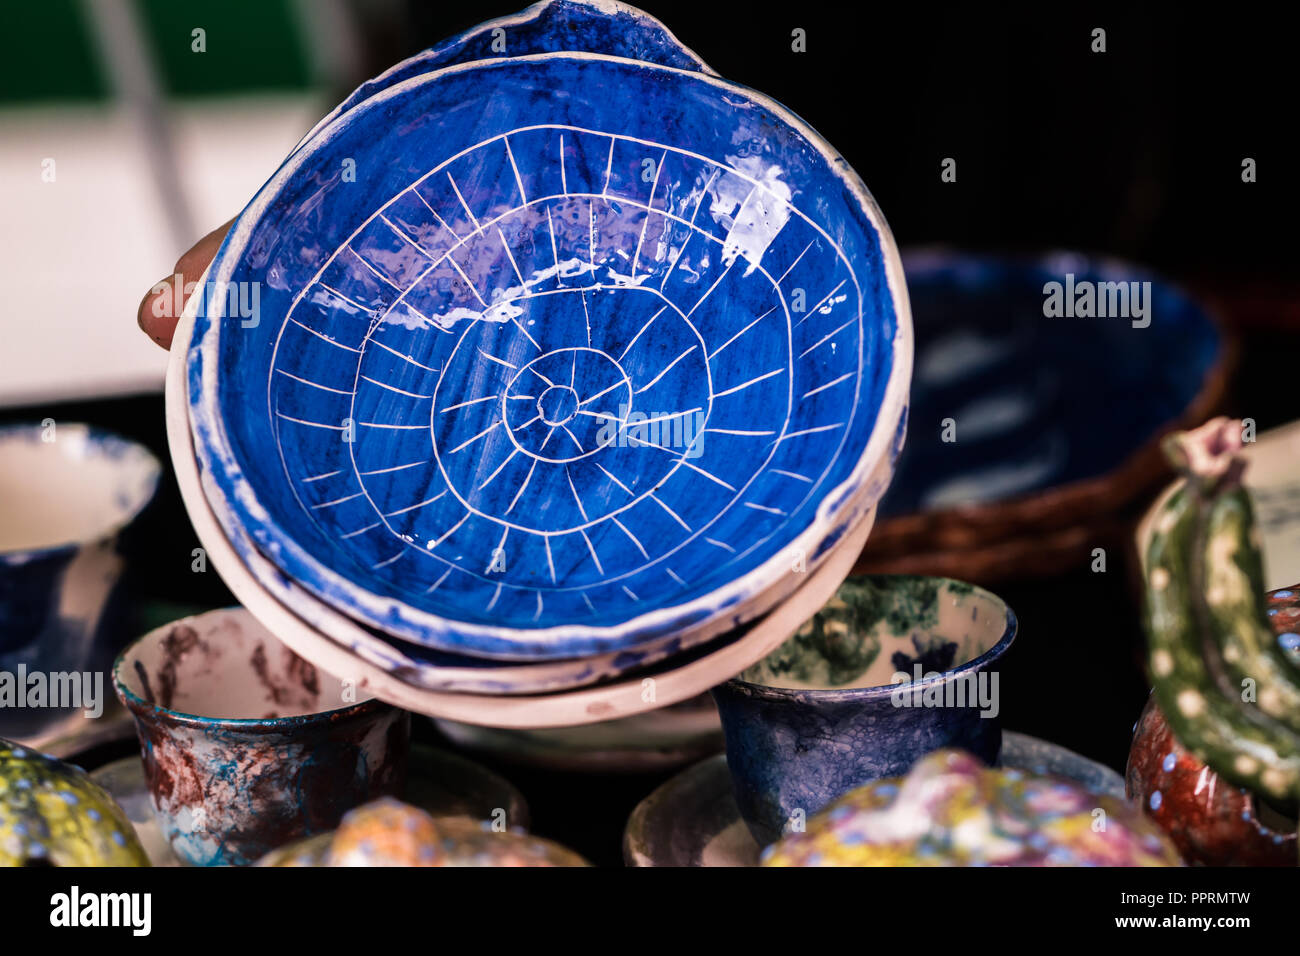 Indigo Blau handgefertigte Keramik Teller Stockfoto